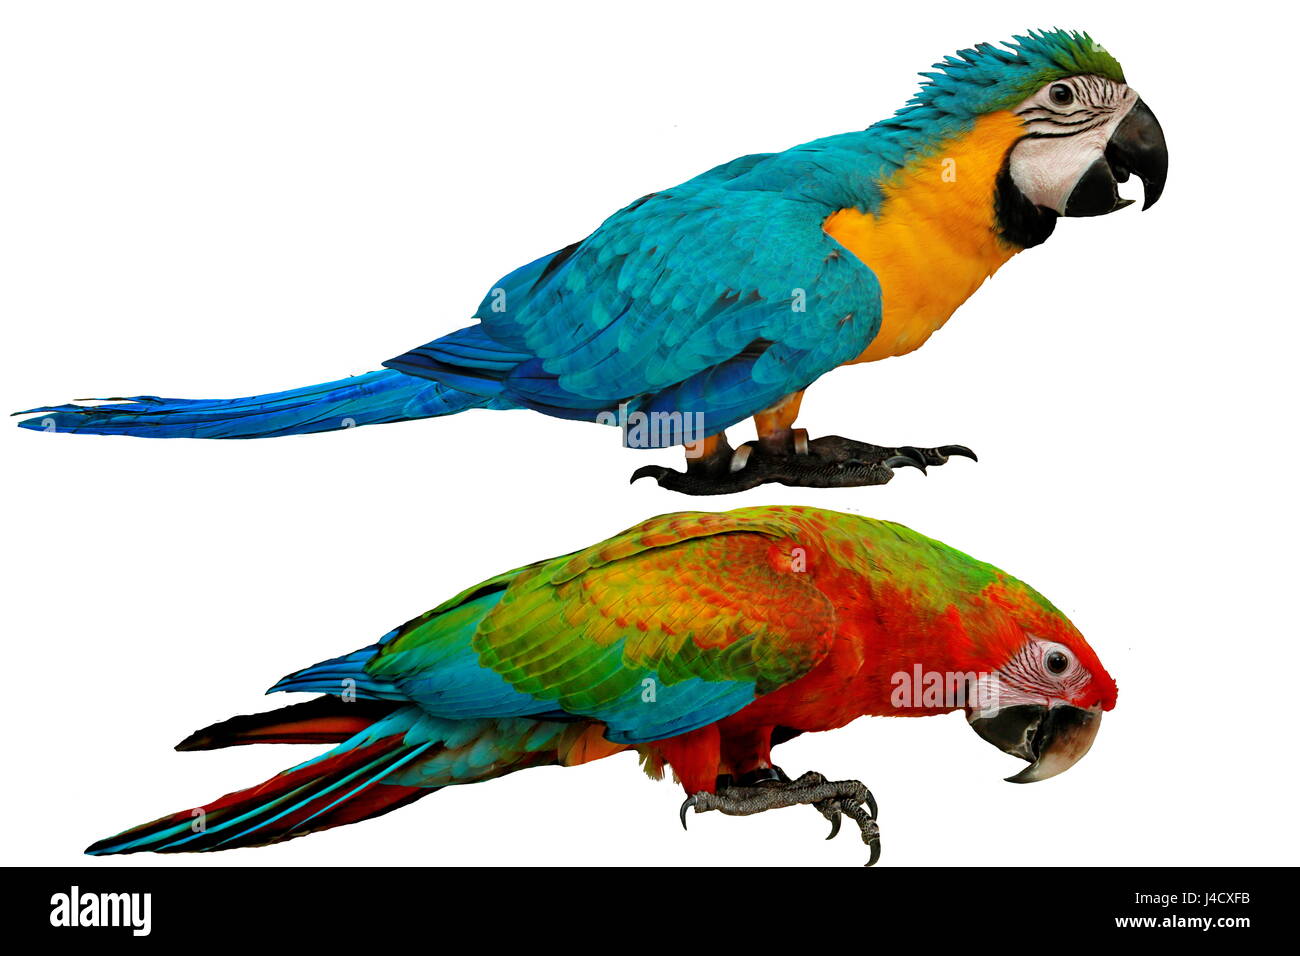 Les perroquets colorés comme mâle bleu et jaune perroquet ara rouge et bleu avec macaw parrot isolé sur fond blanc. Banque D'Images